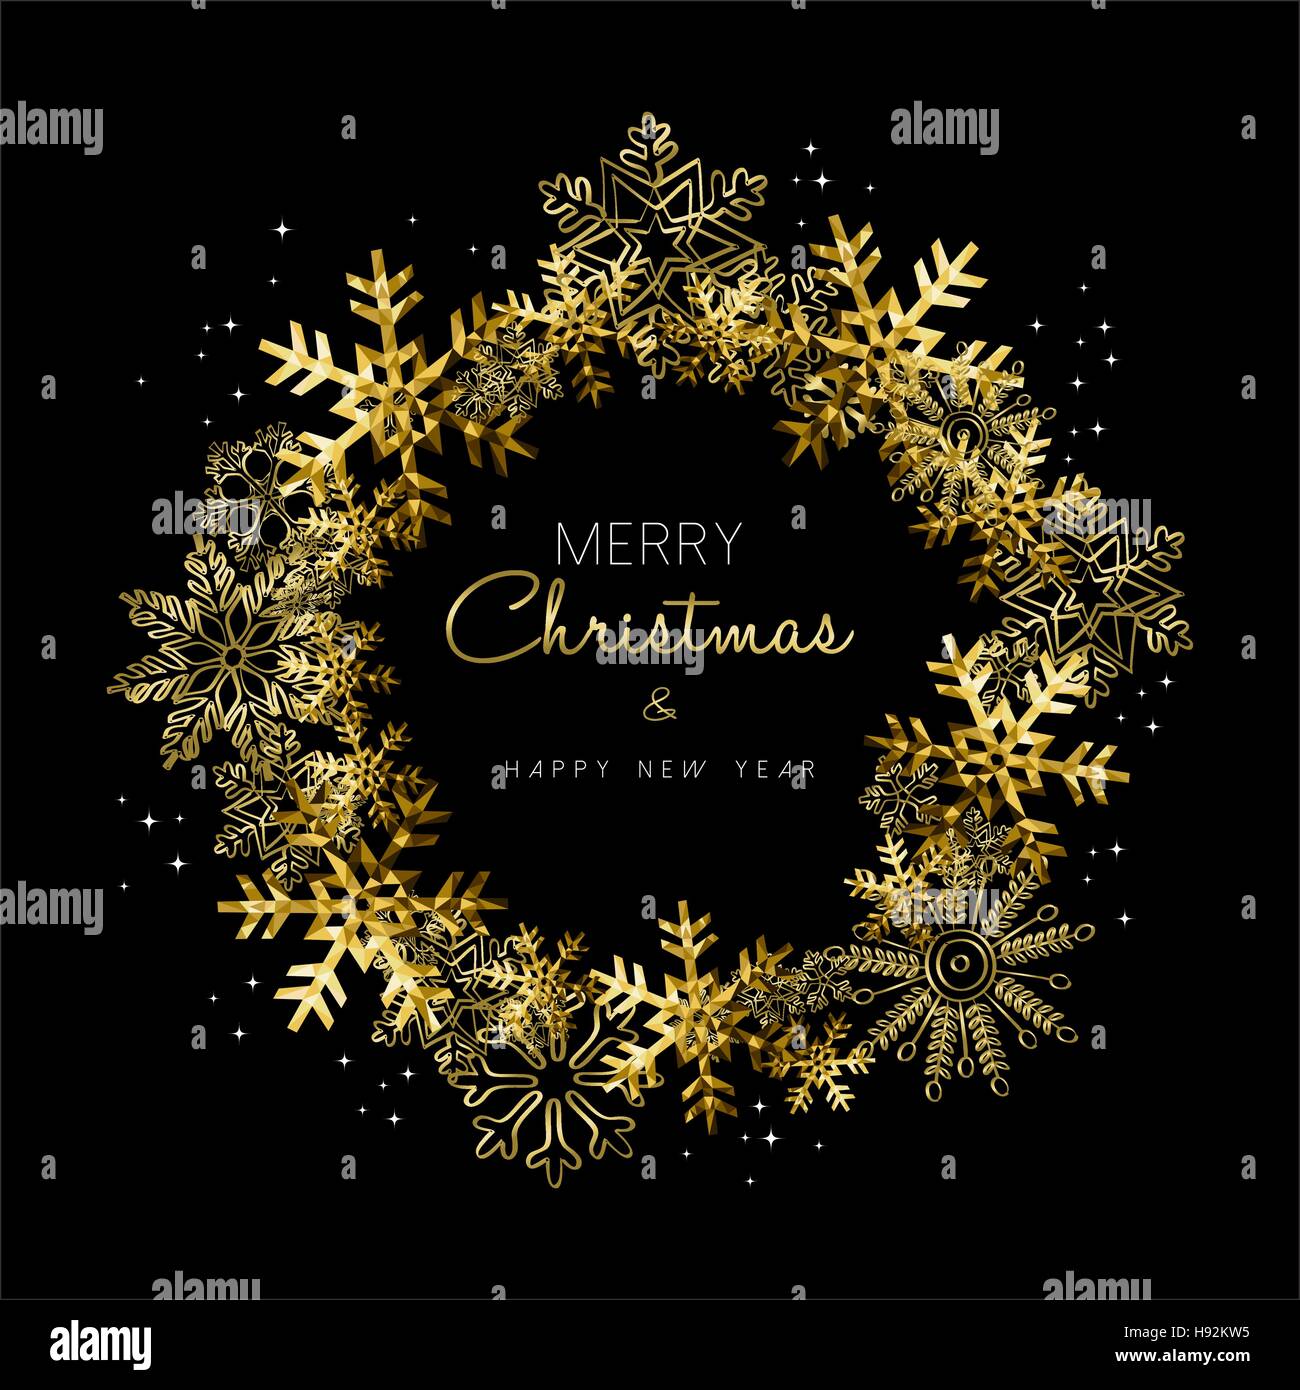 Frohe Weihnachten, frohes neues Jahr Grußkarte Design mit gold Schneeflocke Kranz Dekoration zur Weihnachtszeit. EPS10 Vektor. Stock Vektor